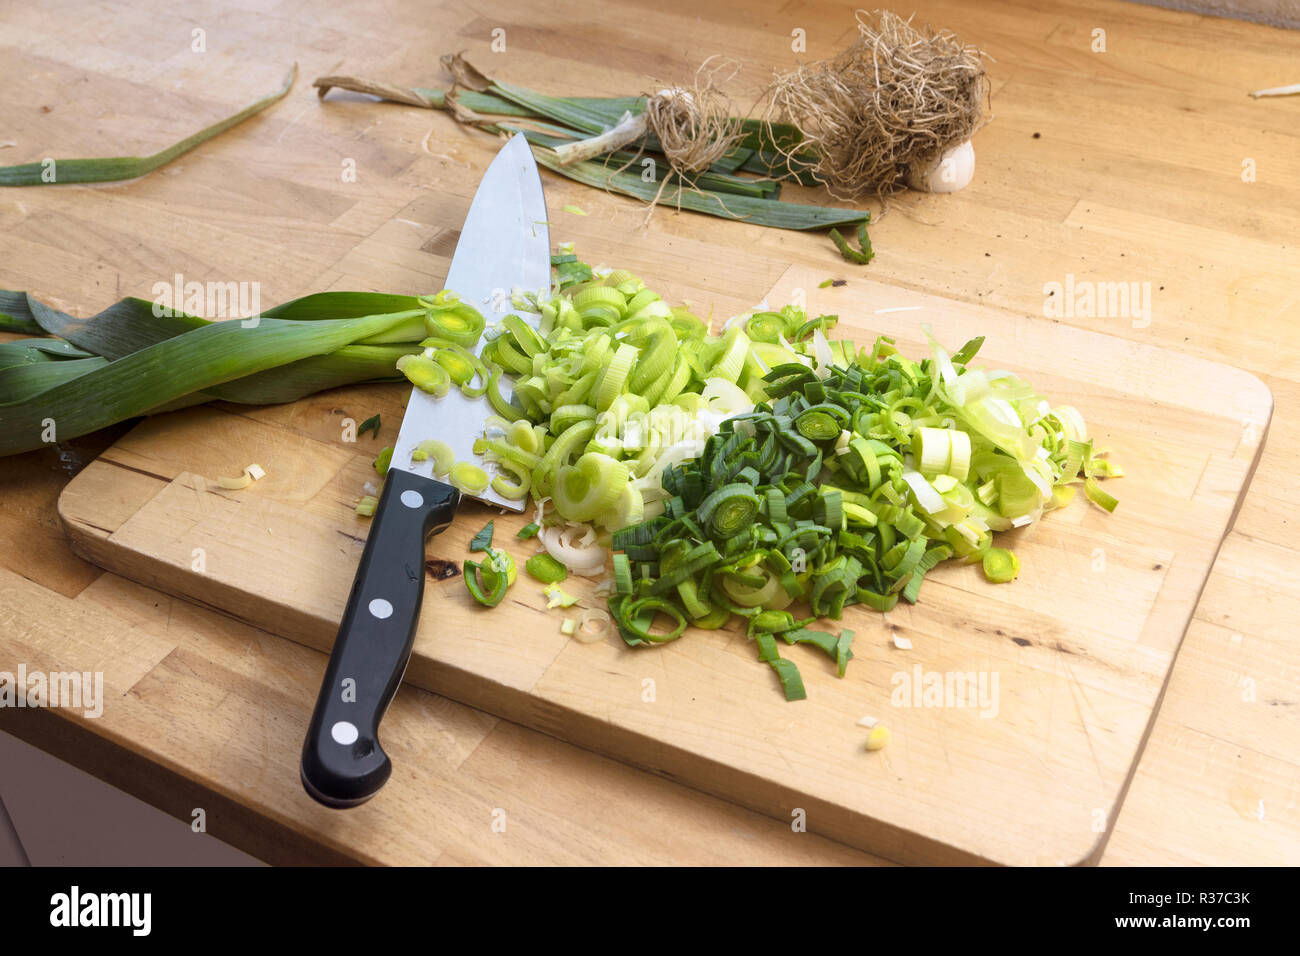 Tagliate a fette il porro e un grosso coltello da cucina in legno piano cucina, concetto di cucina a vista con spazio di copia selezionato, focus, profondità di campo ridotta Foto Stock